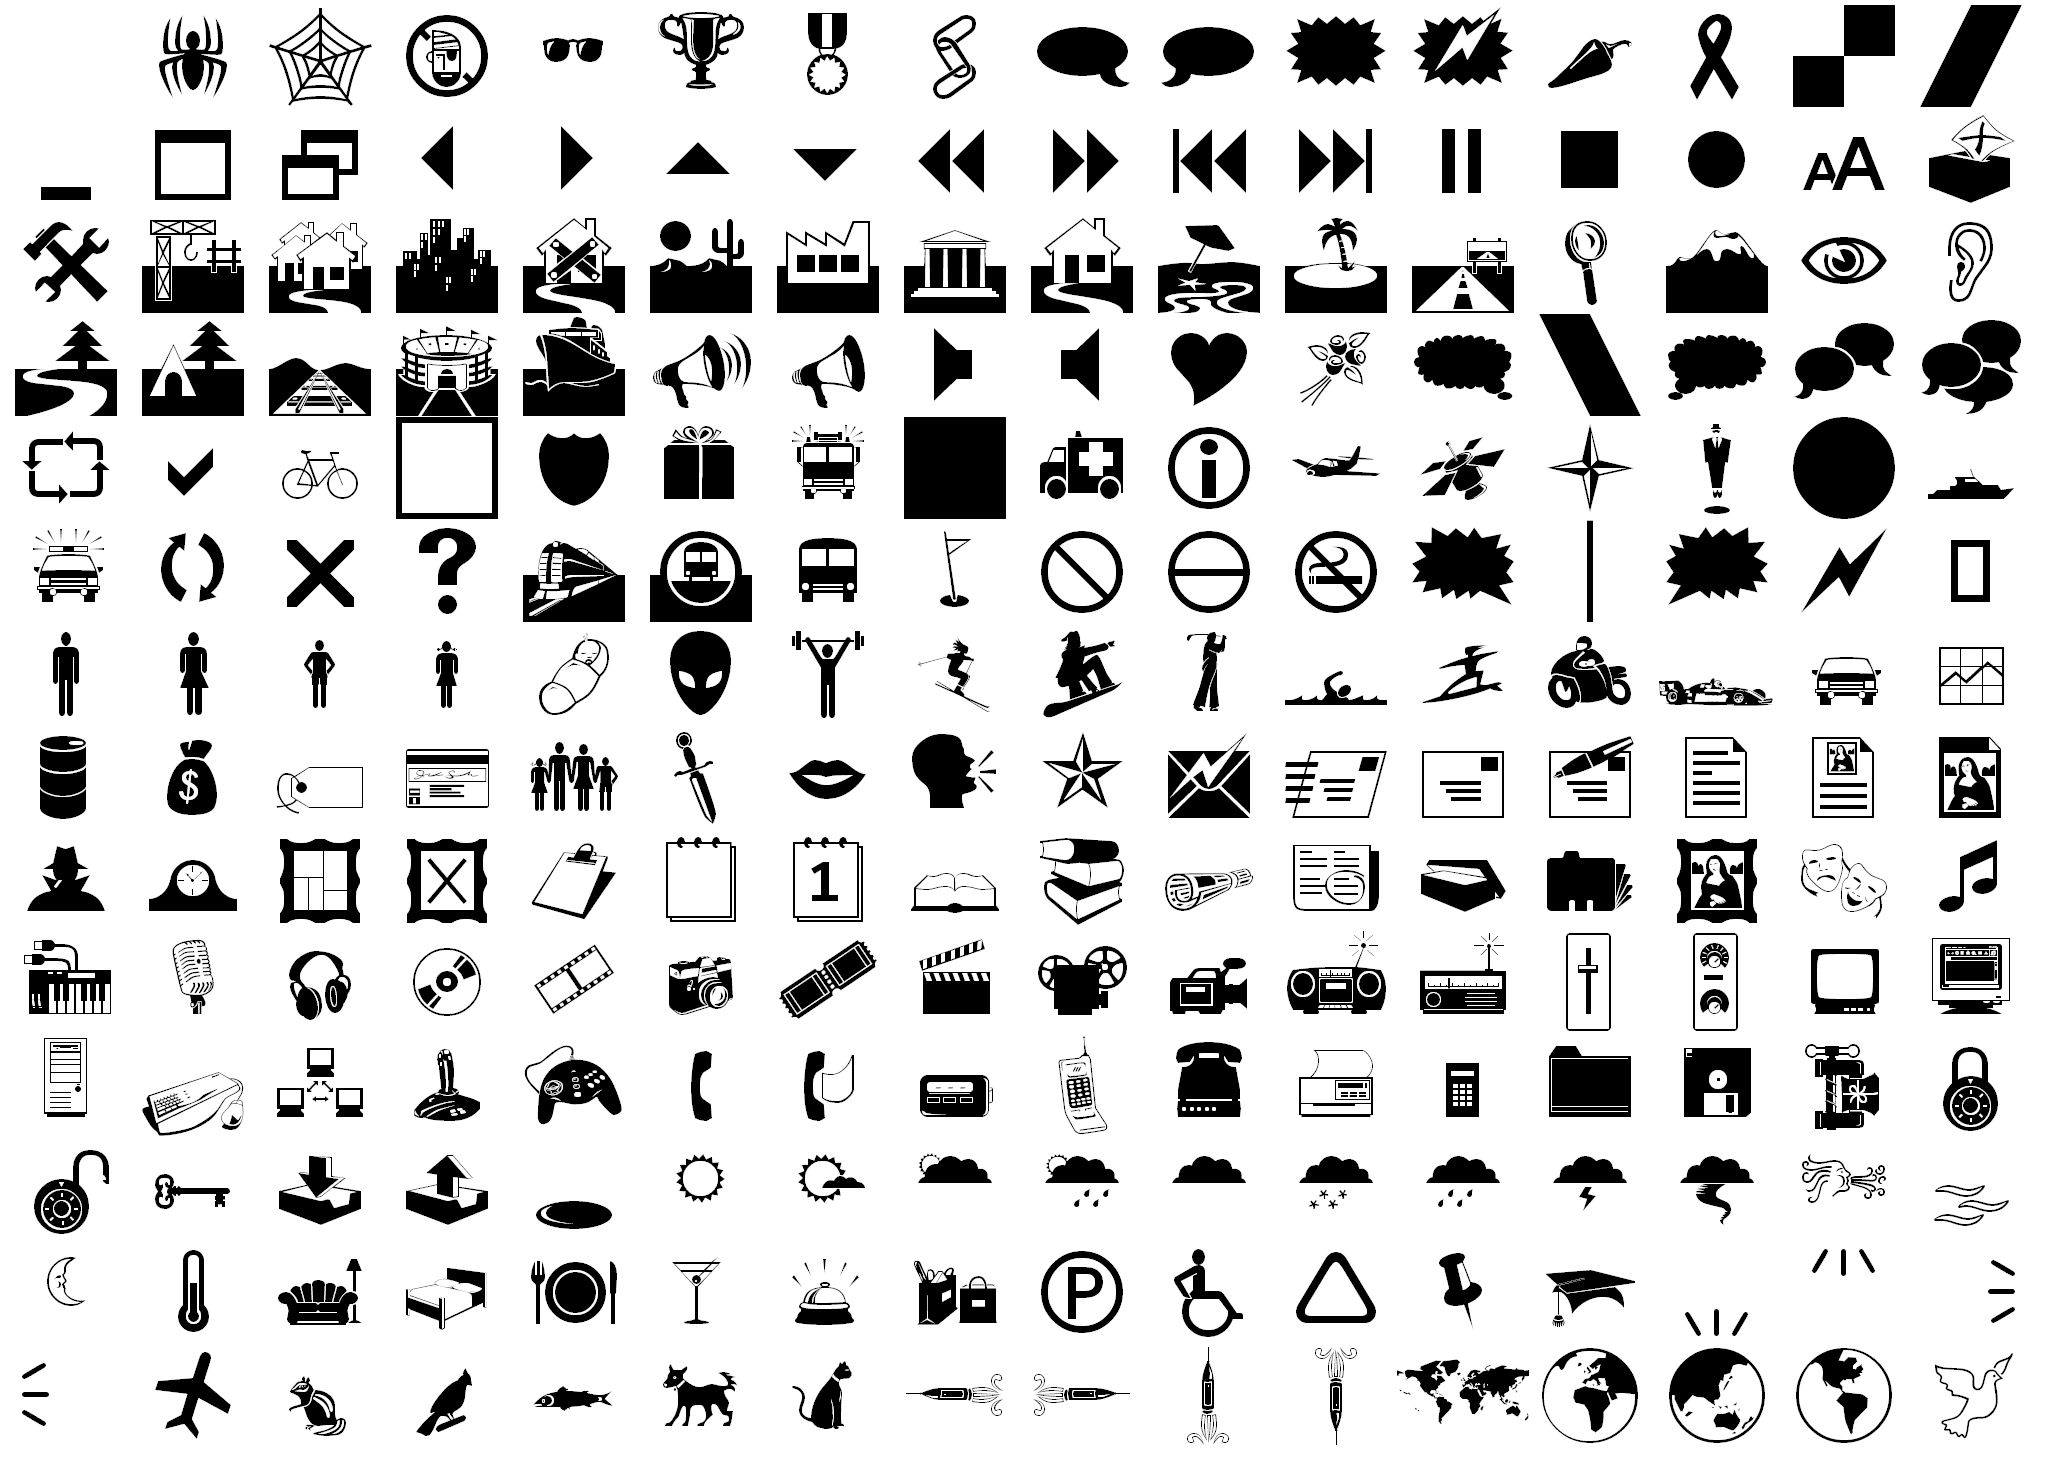 8 Webdings Font Symbols Images